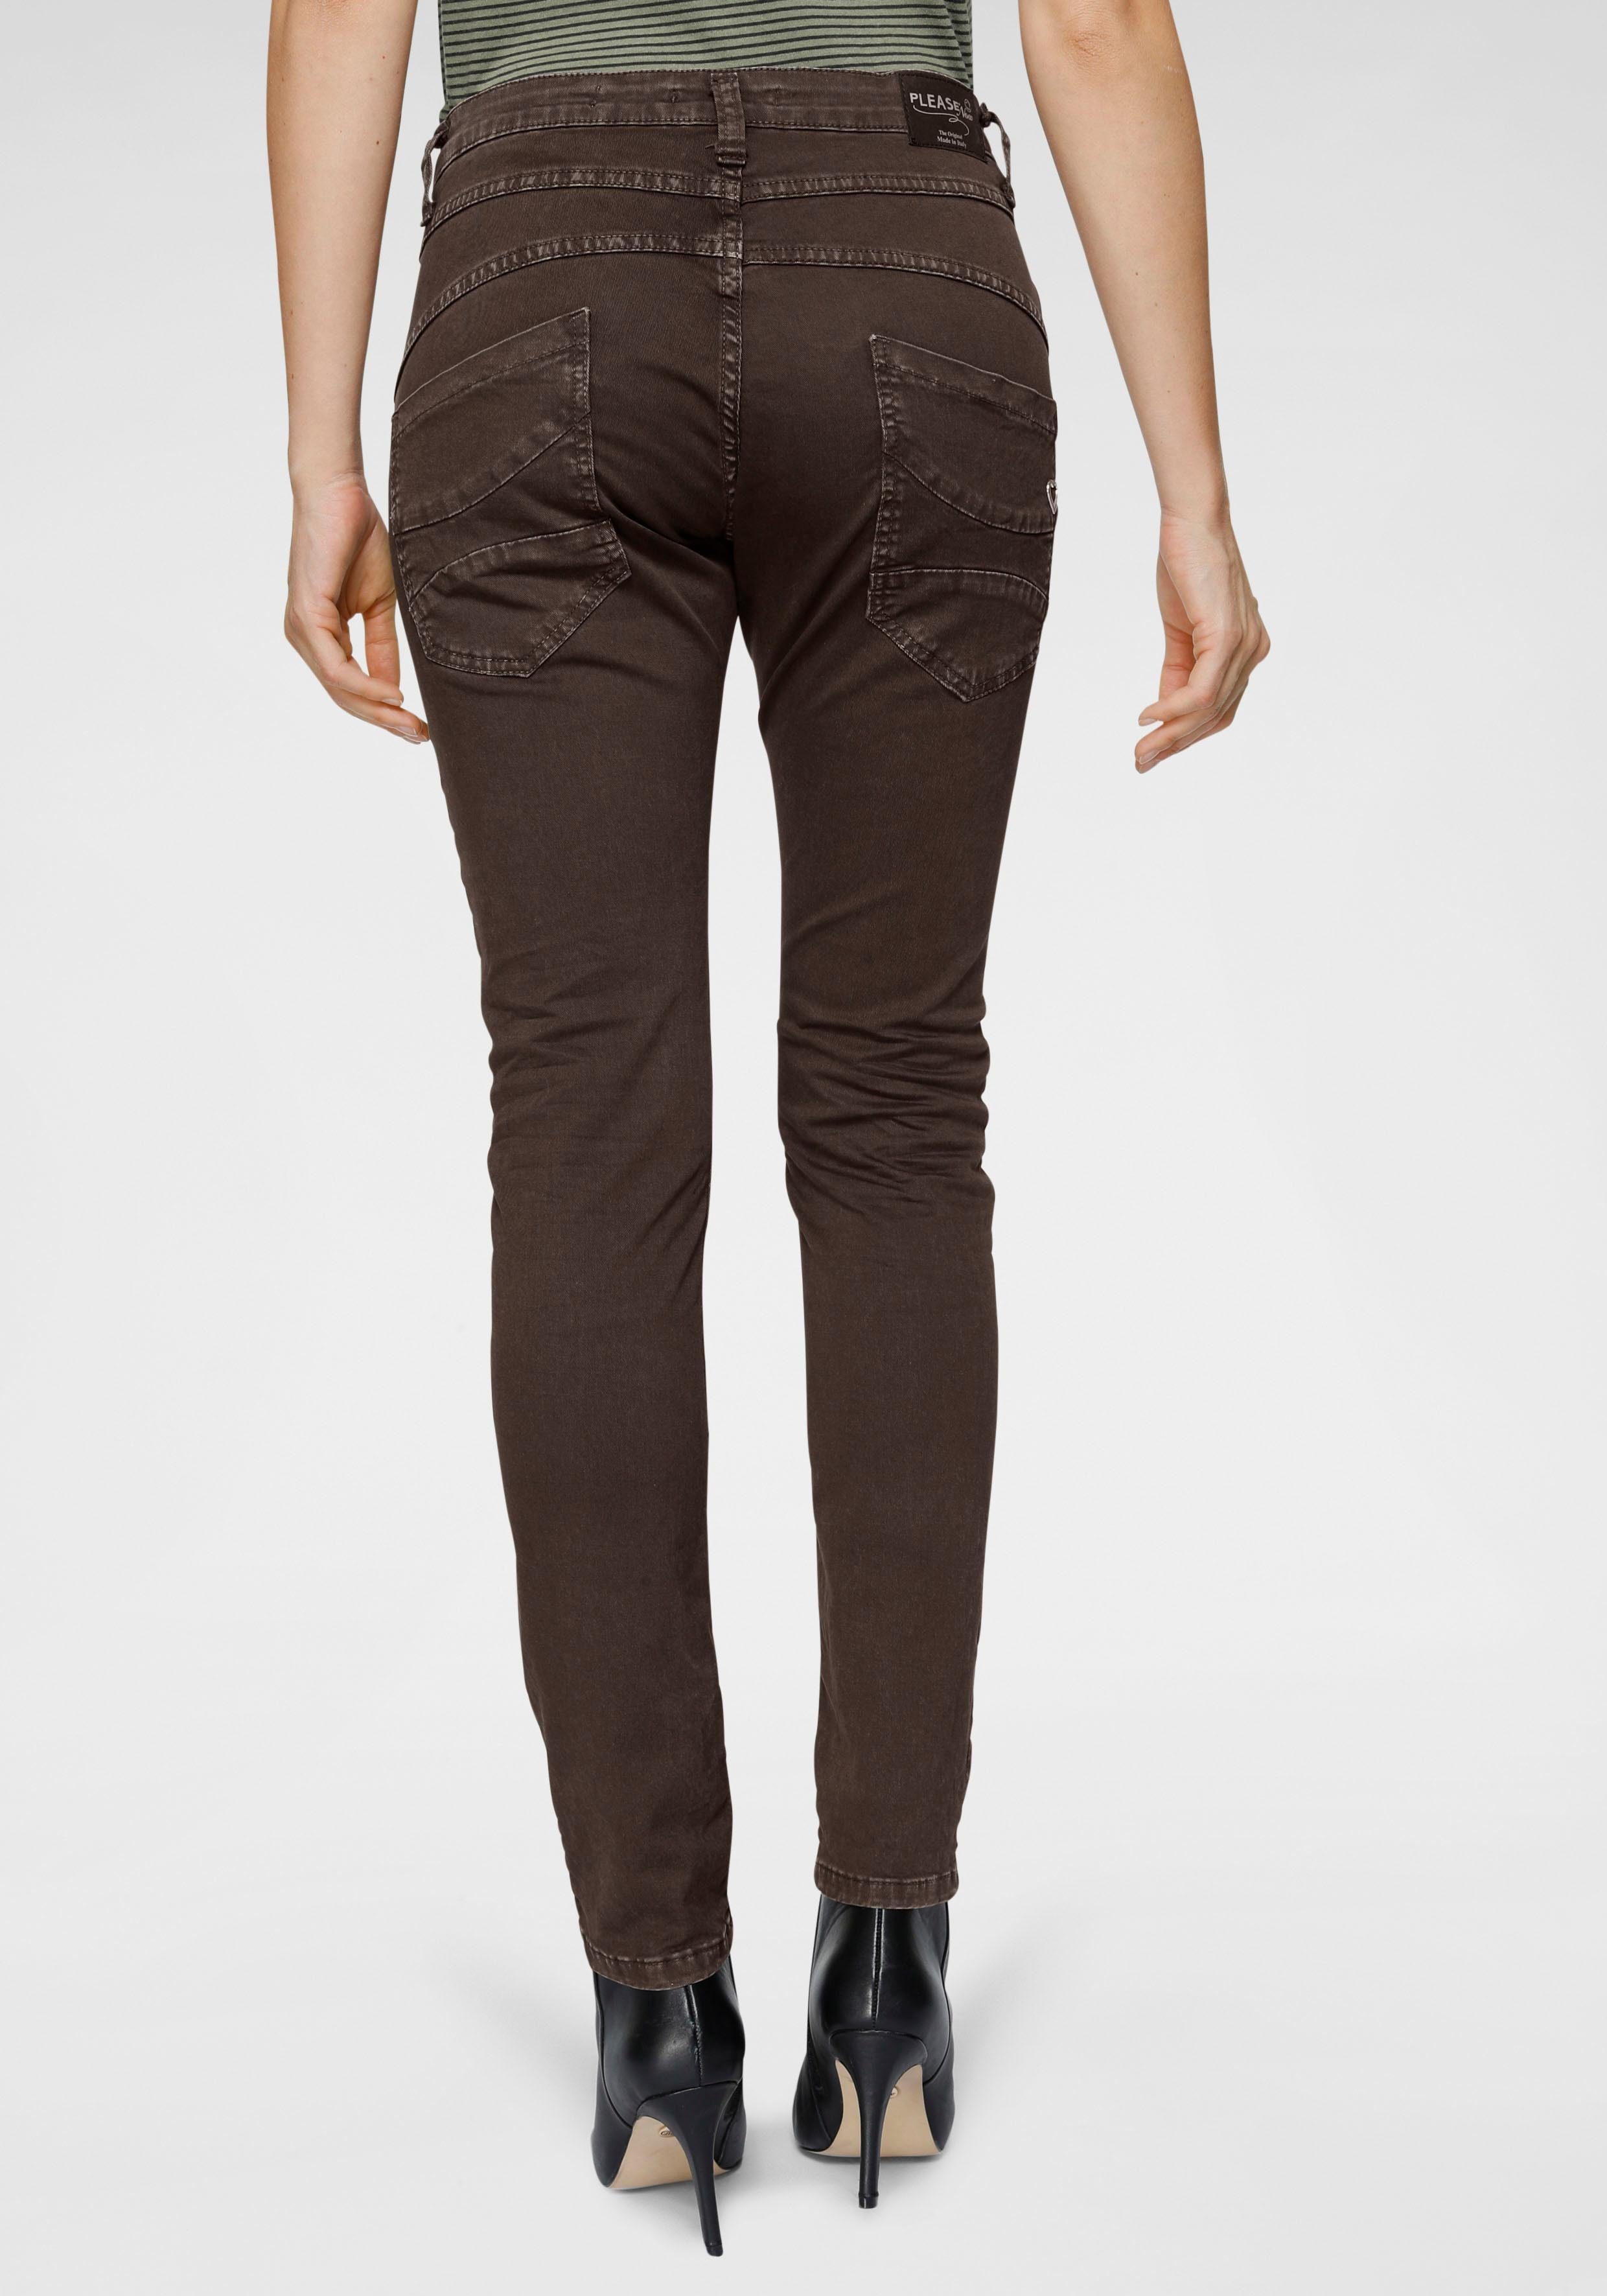 Braune Skinny-Jeans online kaufen | OTTO